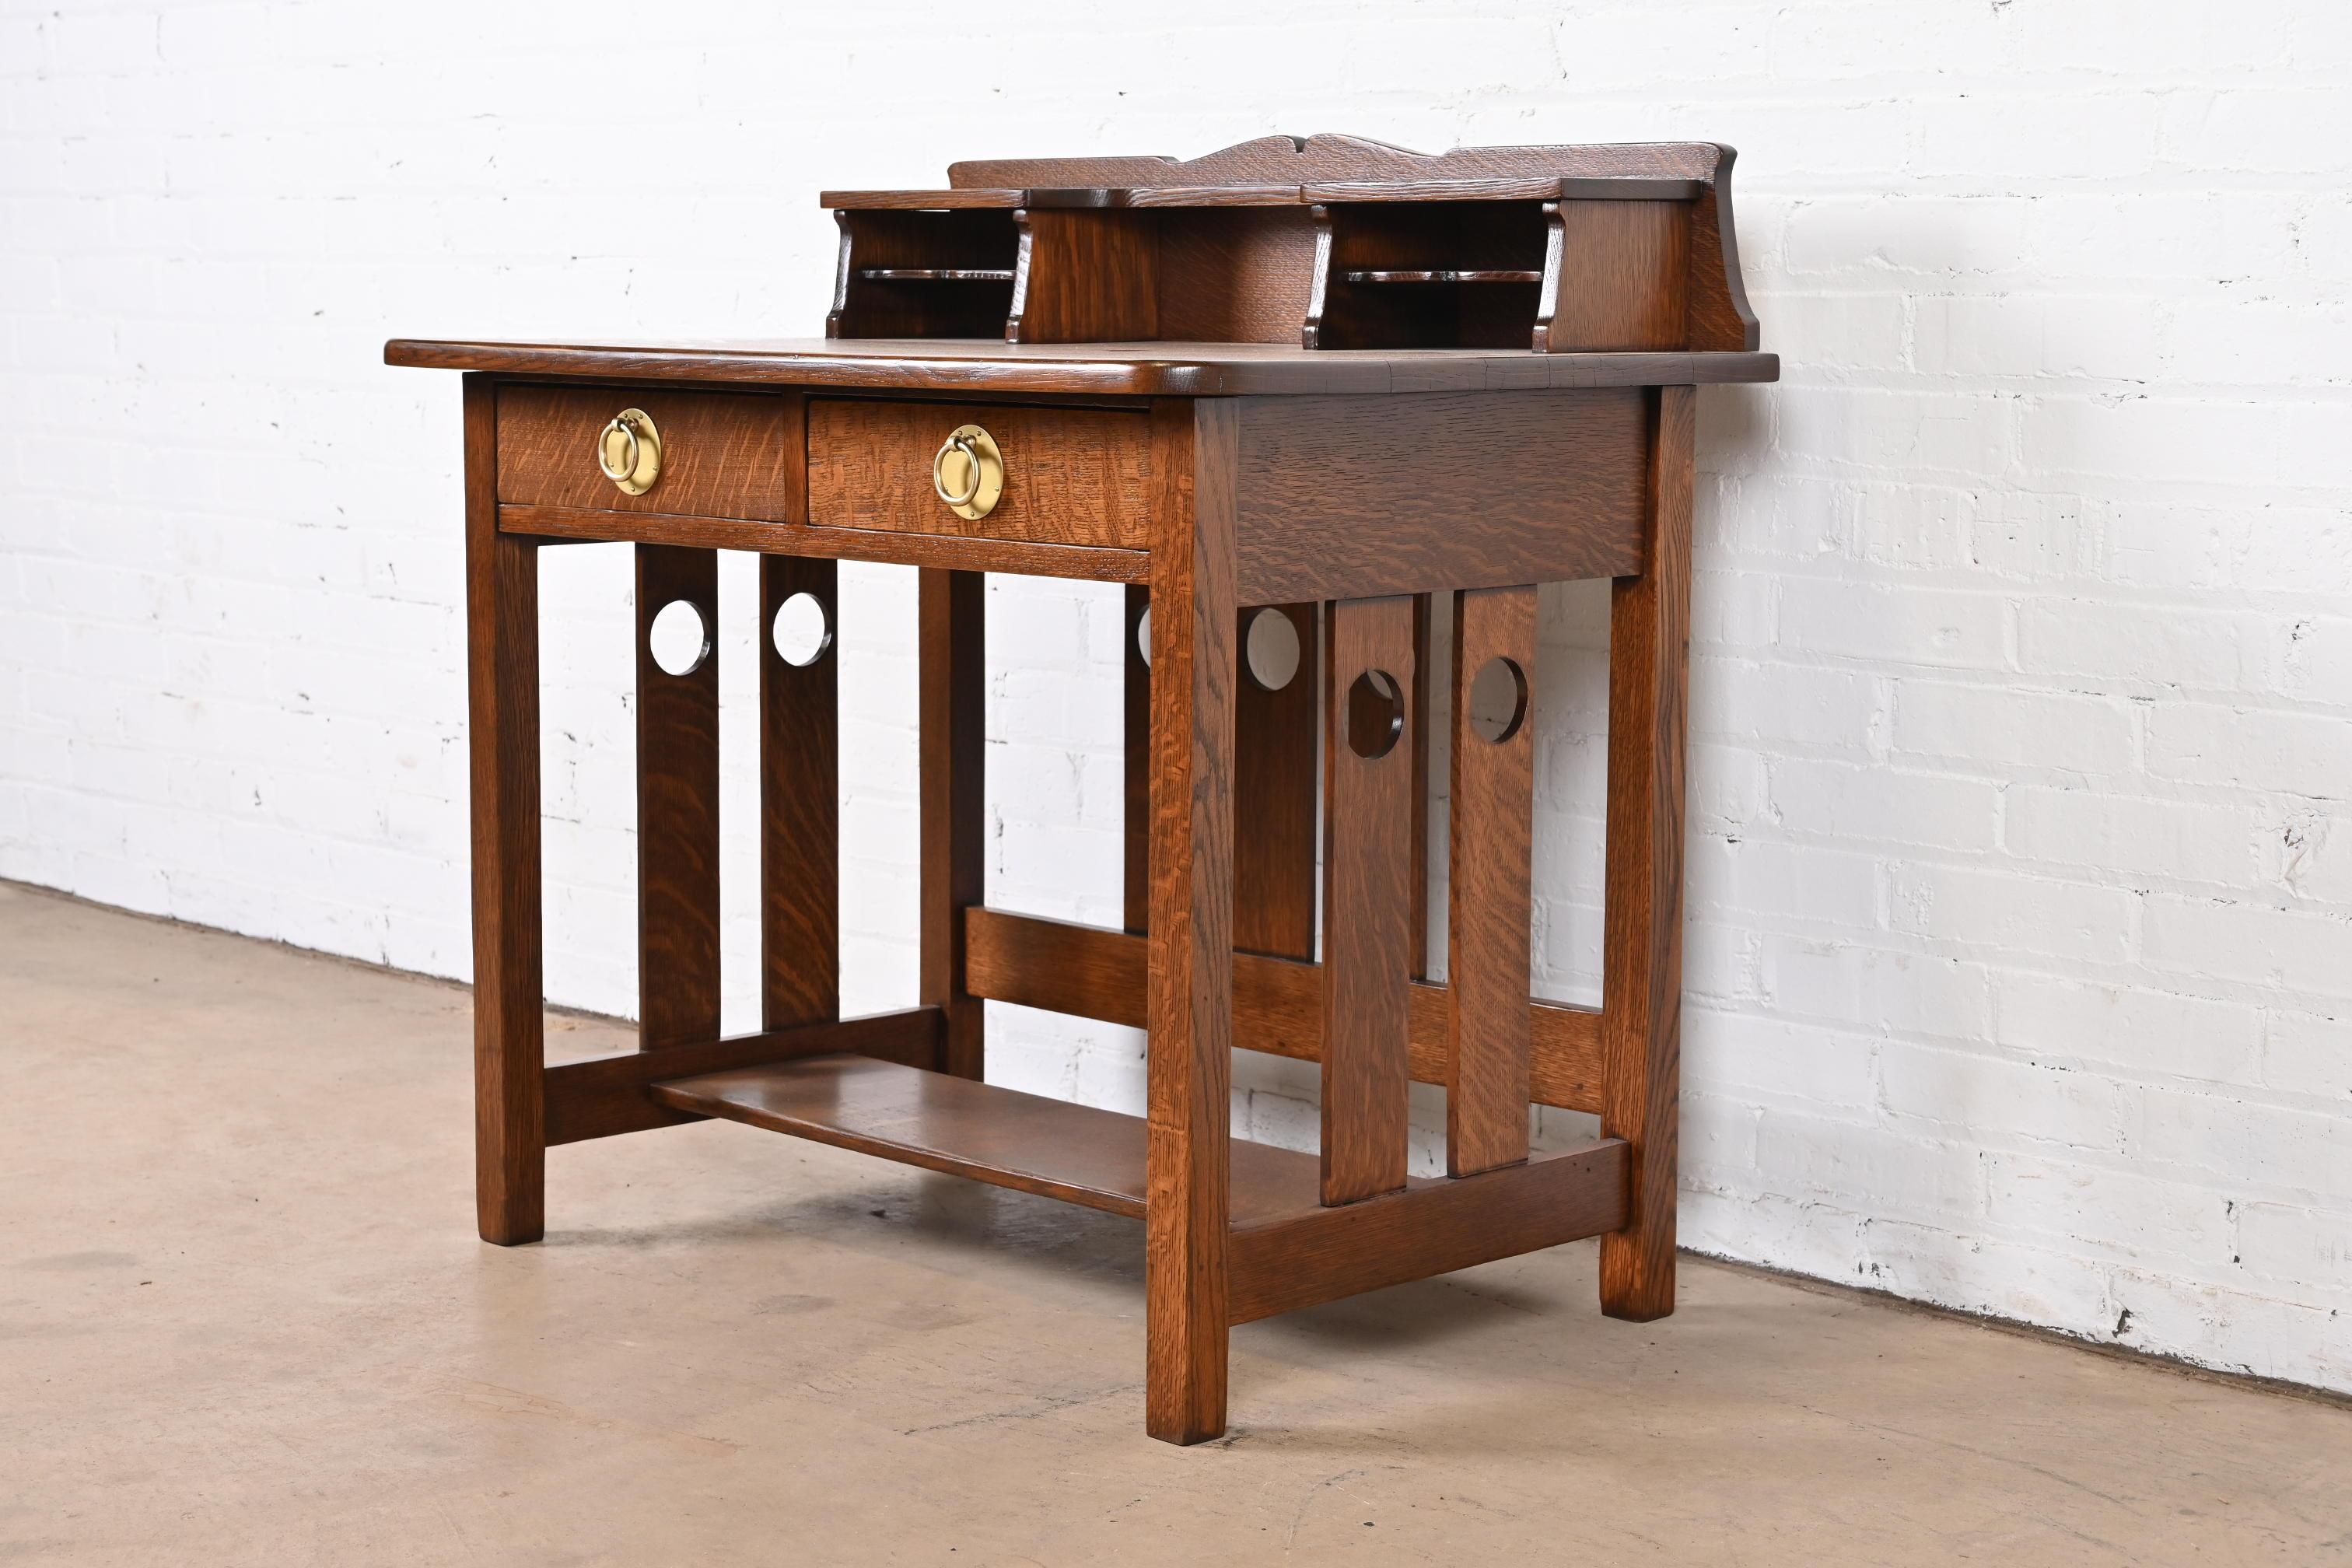 Eine seltene und außergewöhnliche antike Mission Eiche Arts & Crafts Schreibtisch

Von Gebrüder Stickley

USA, ca. 1900

Massive, quartiersgesägte Eiche, mit Kupferbeschlägen.

Maße: 36